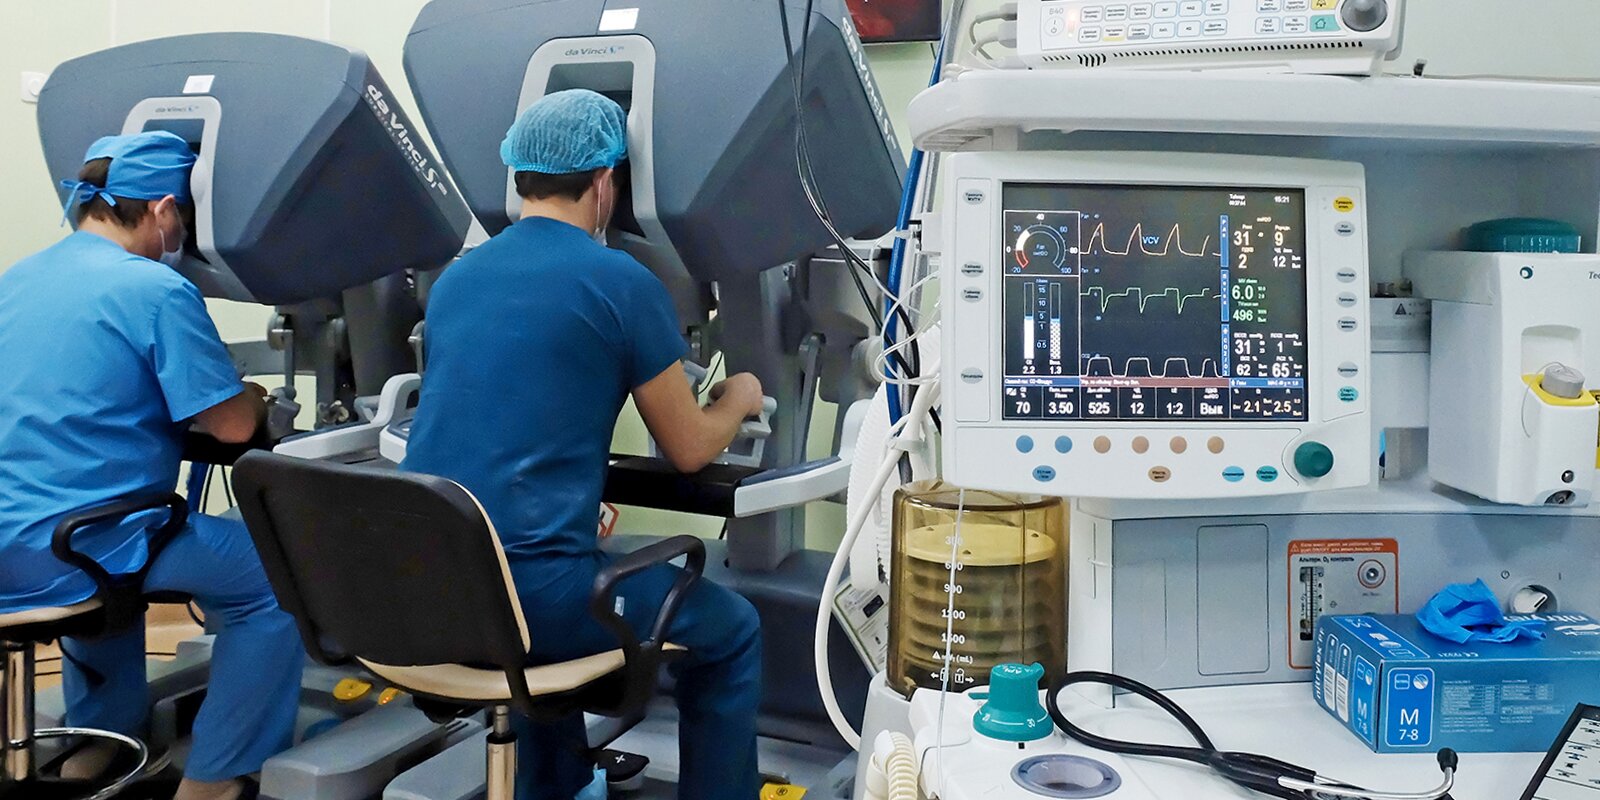 В Боткинской больнице начал работу робот-хирург